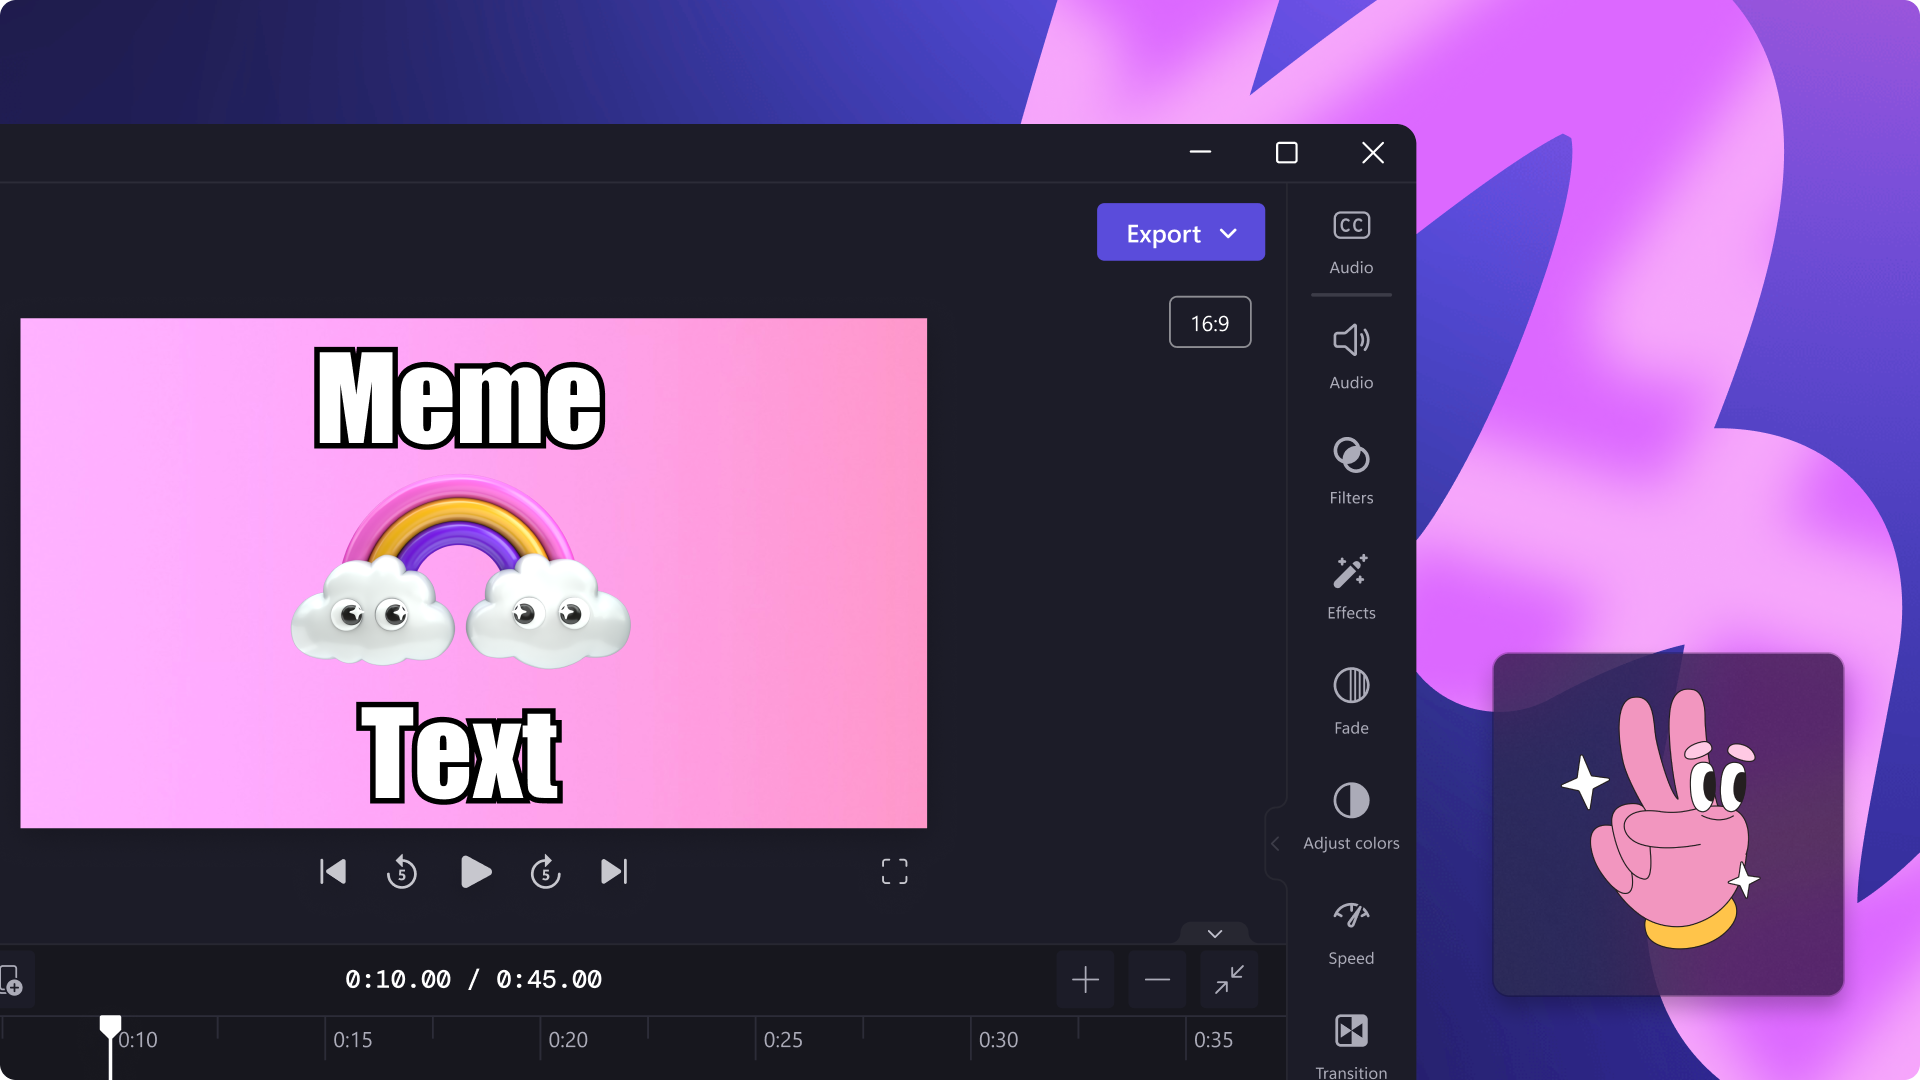 Hình ảnh về video meme trong trình biên tập.